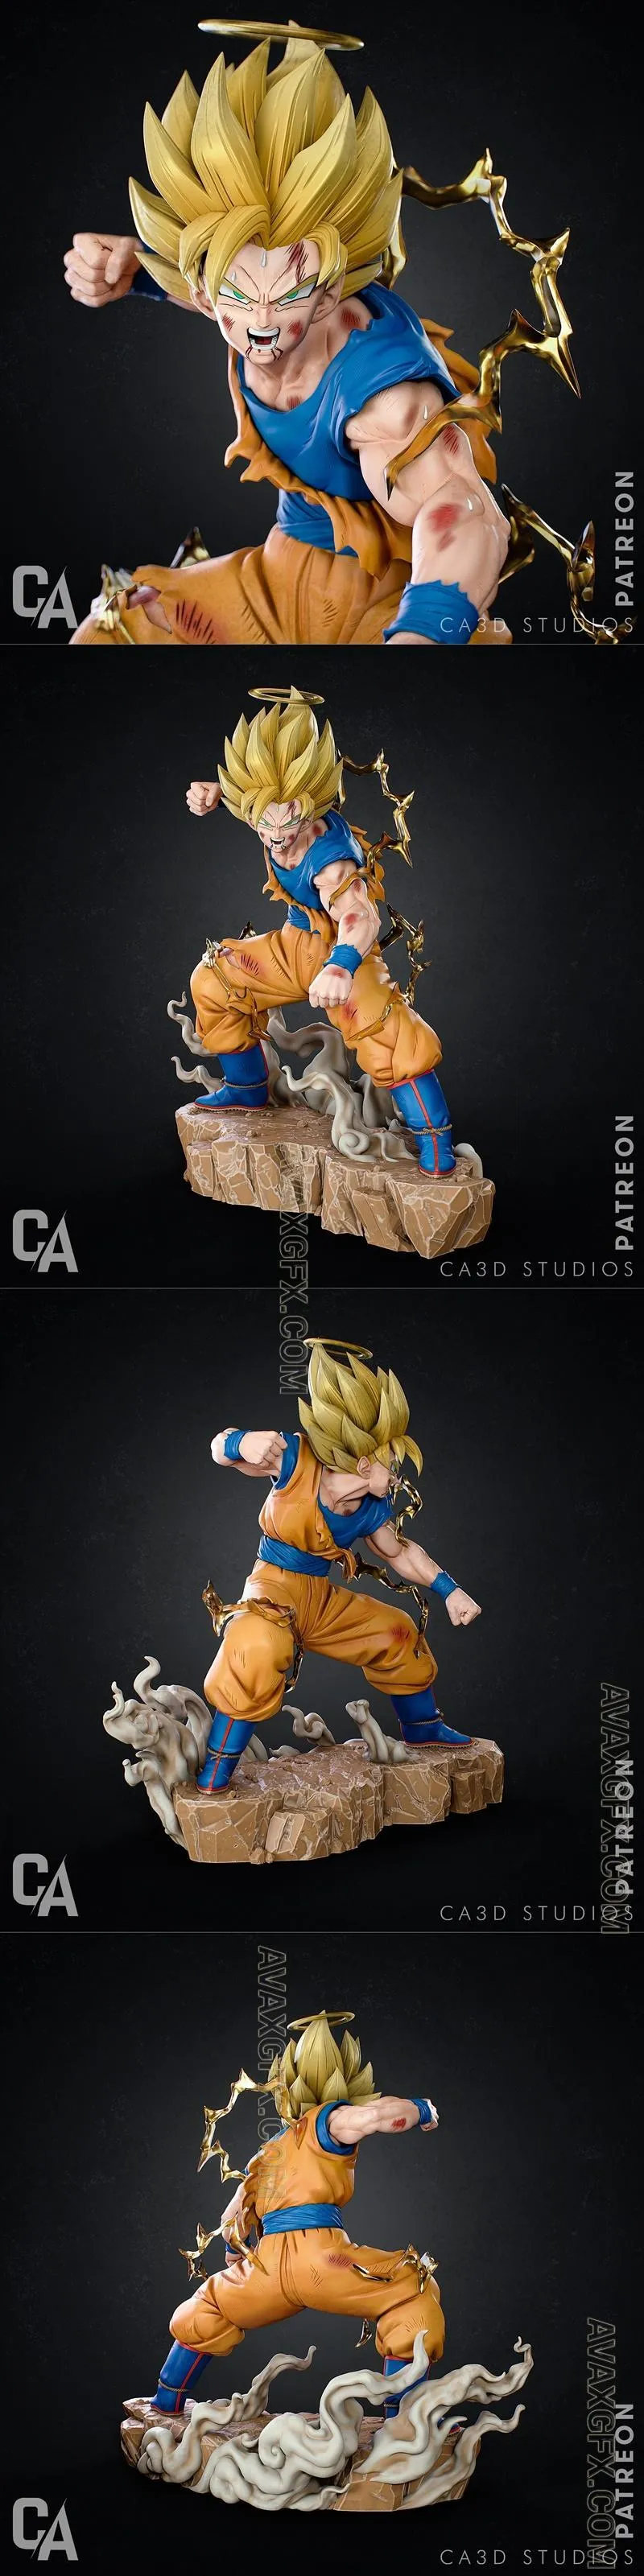 Ca 3d Studios - Goku - STL 3D Model